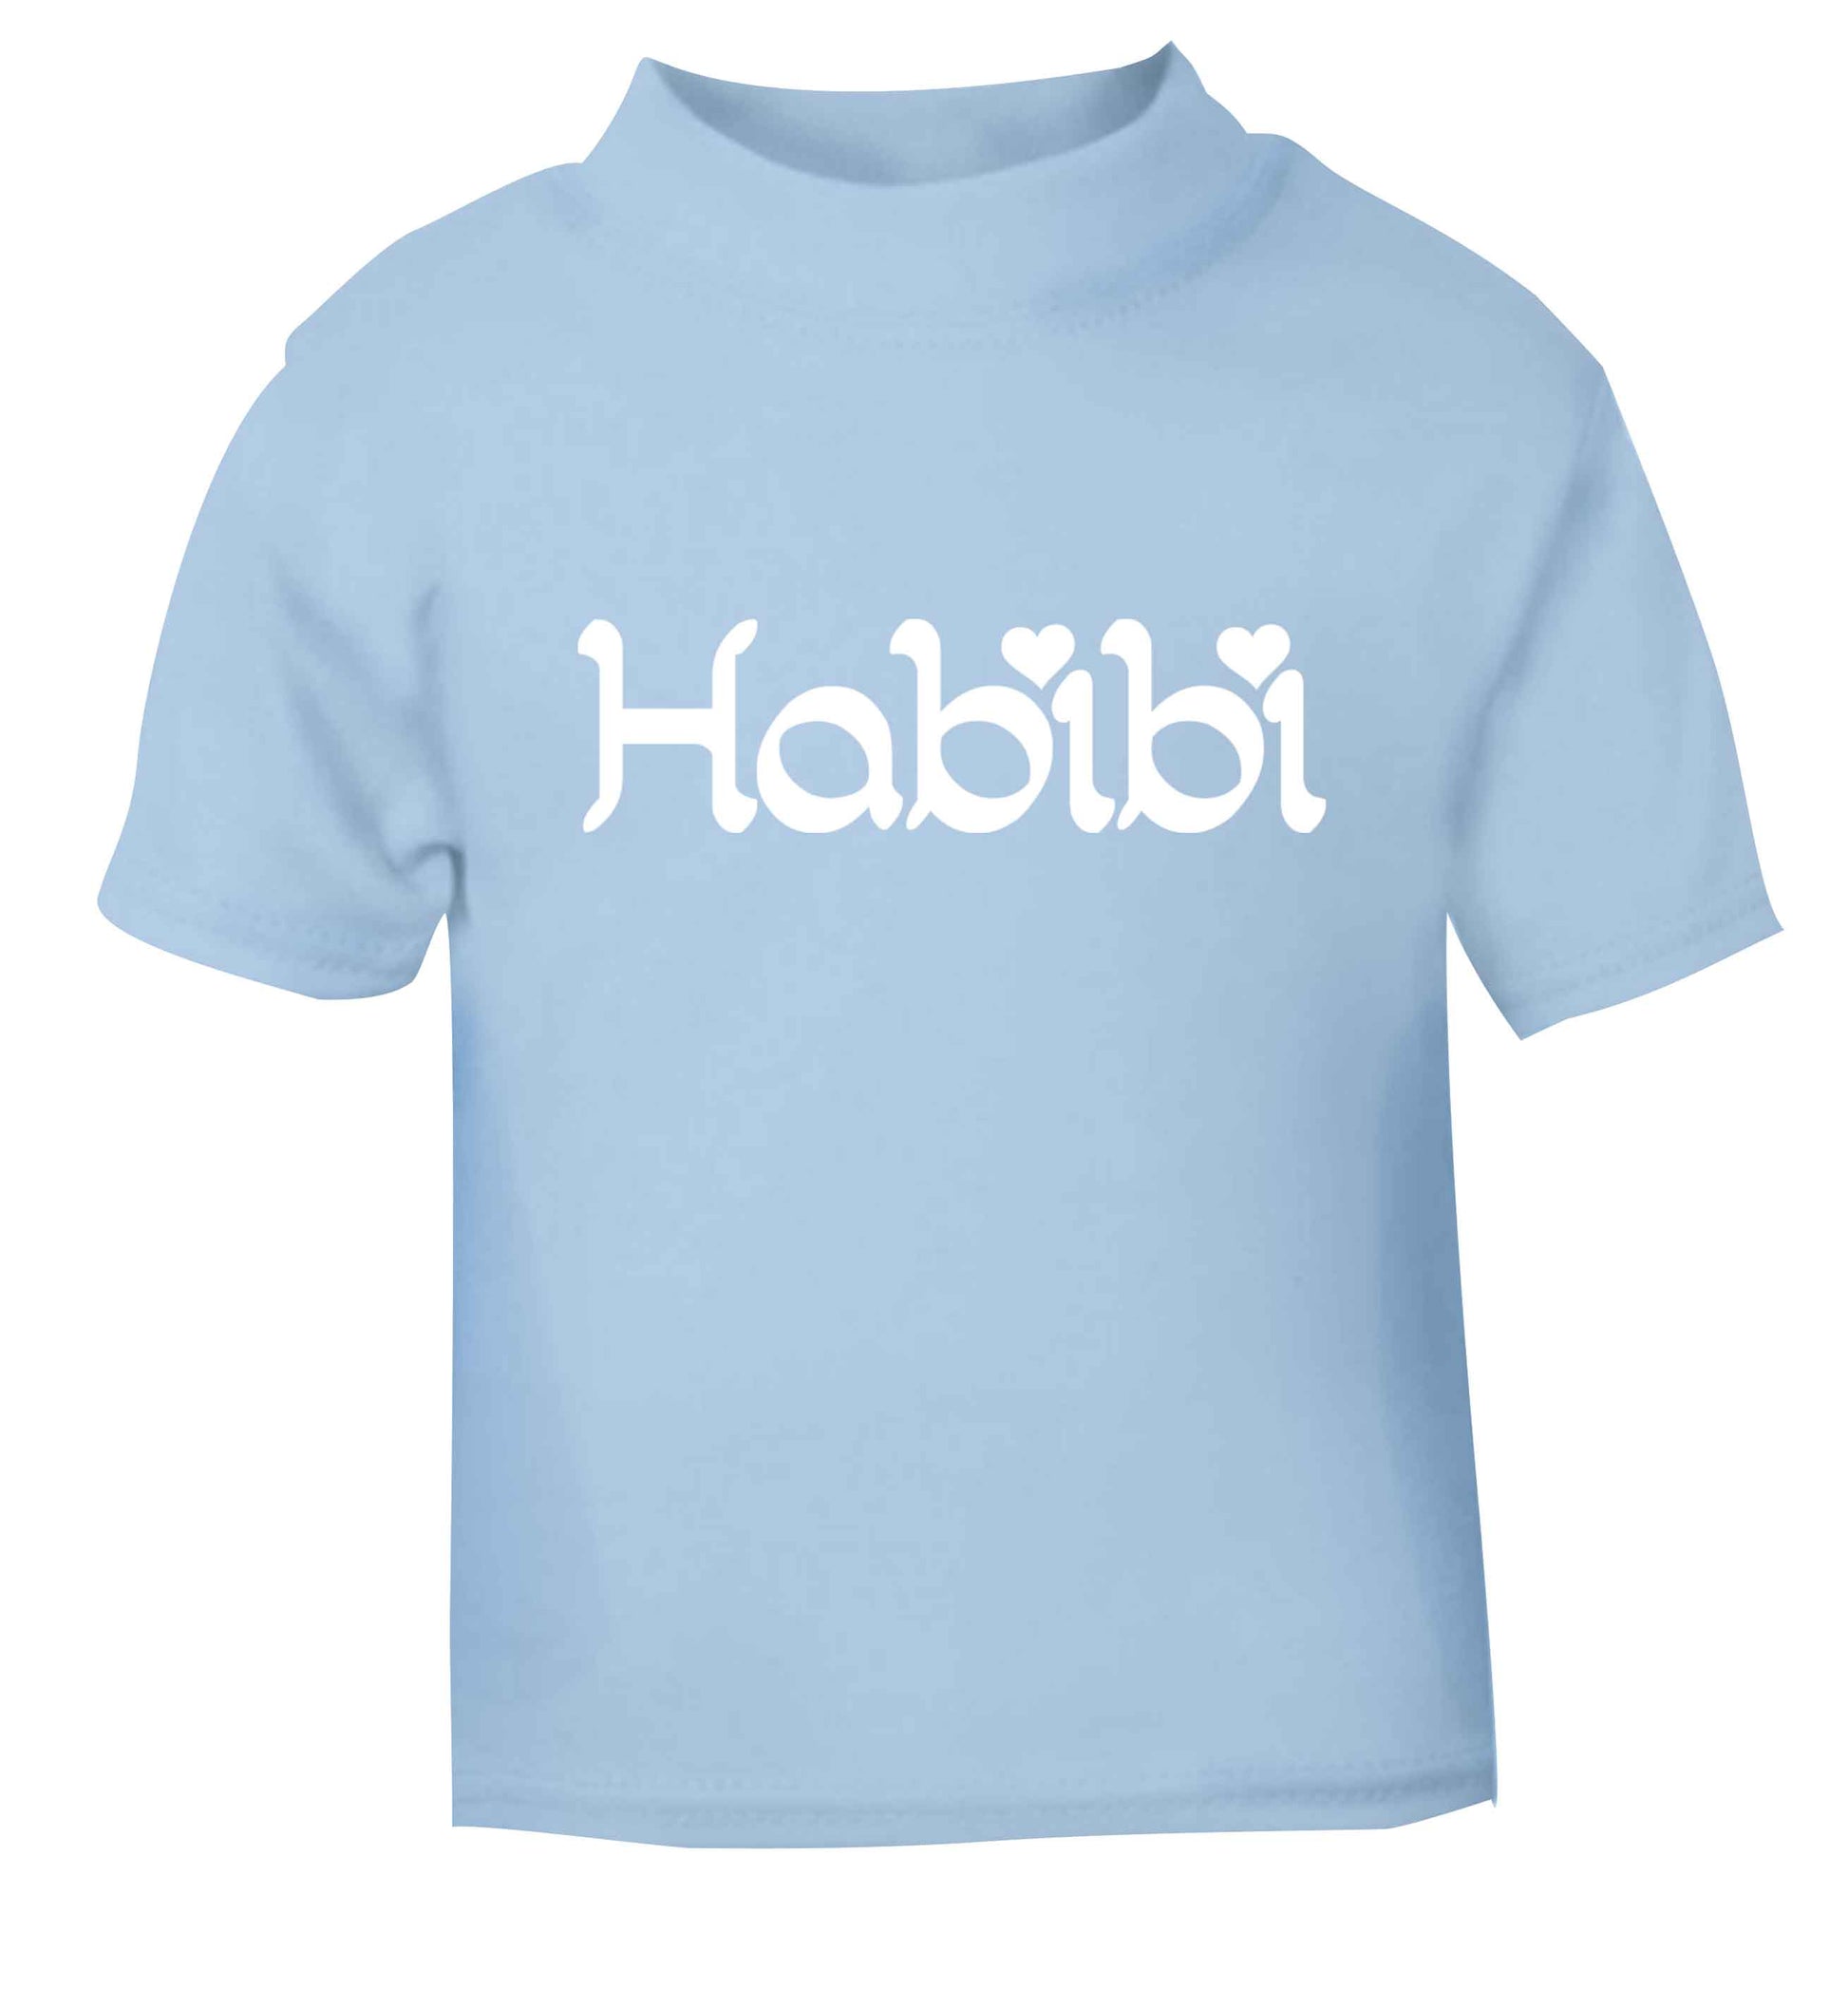 Habibi light blue baby toddler Tshirt 2 Years